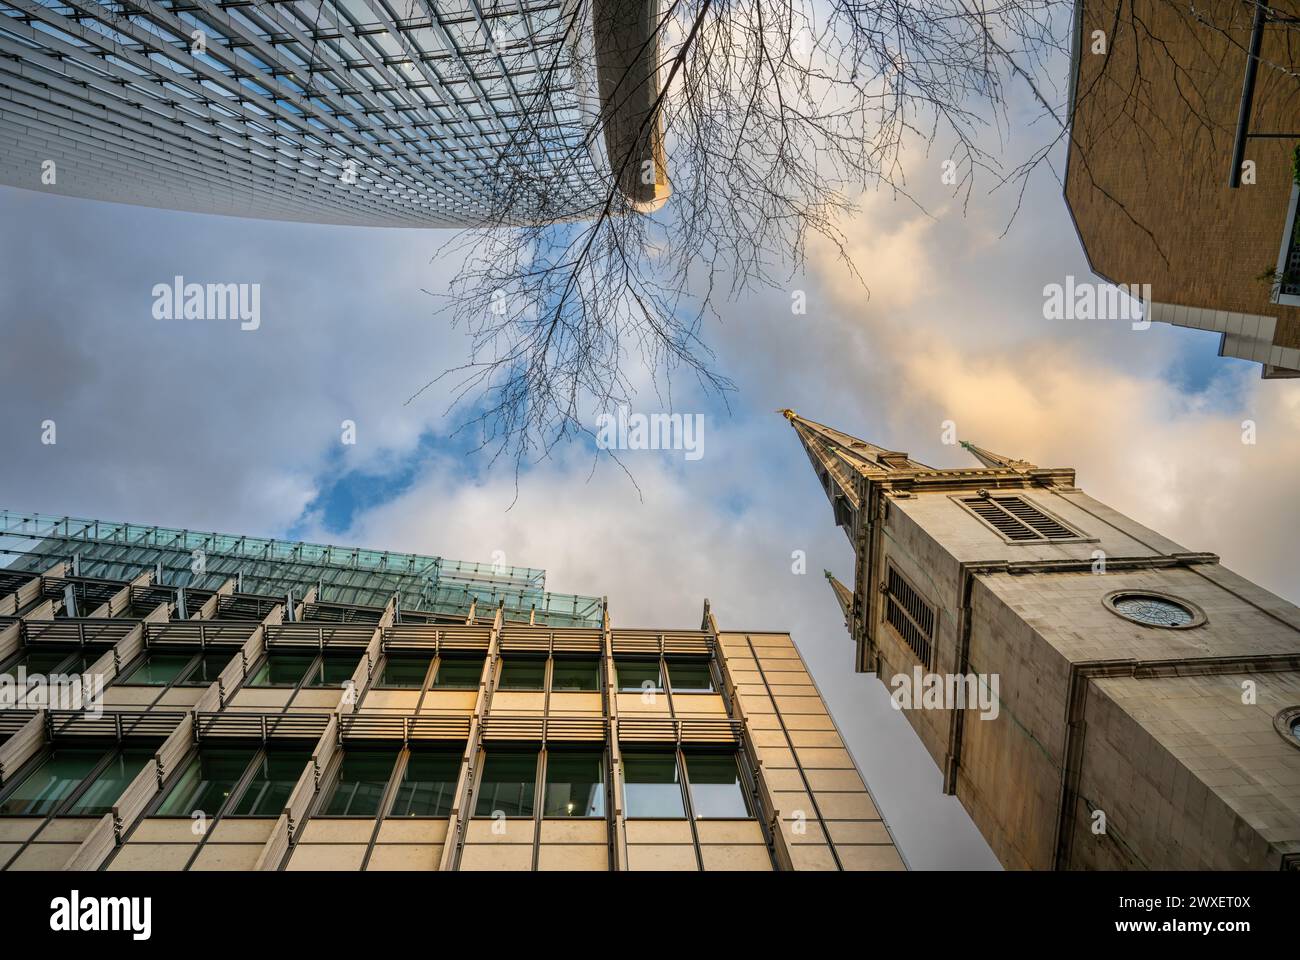 Londres, Royaume-Uni : regarder dans la City de Londres avec le bâtiment Walkie-Talkie (en haut à l) et l'église St Margaret Pattens d'Angleterre, EastCheap (en bas à R). Banque D'Images